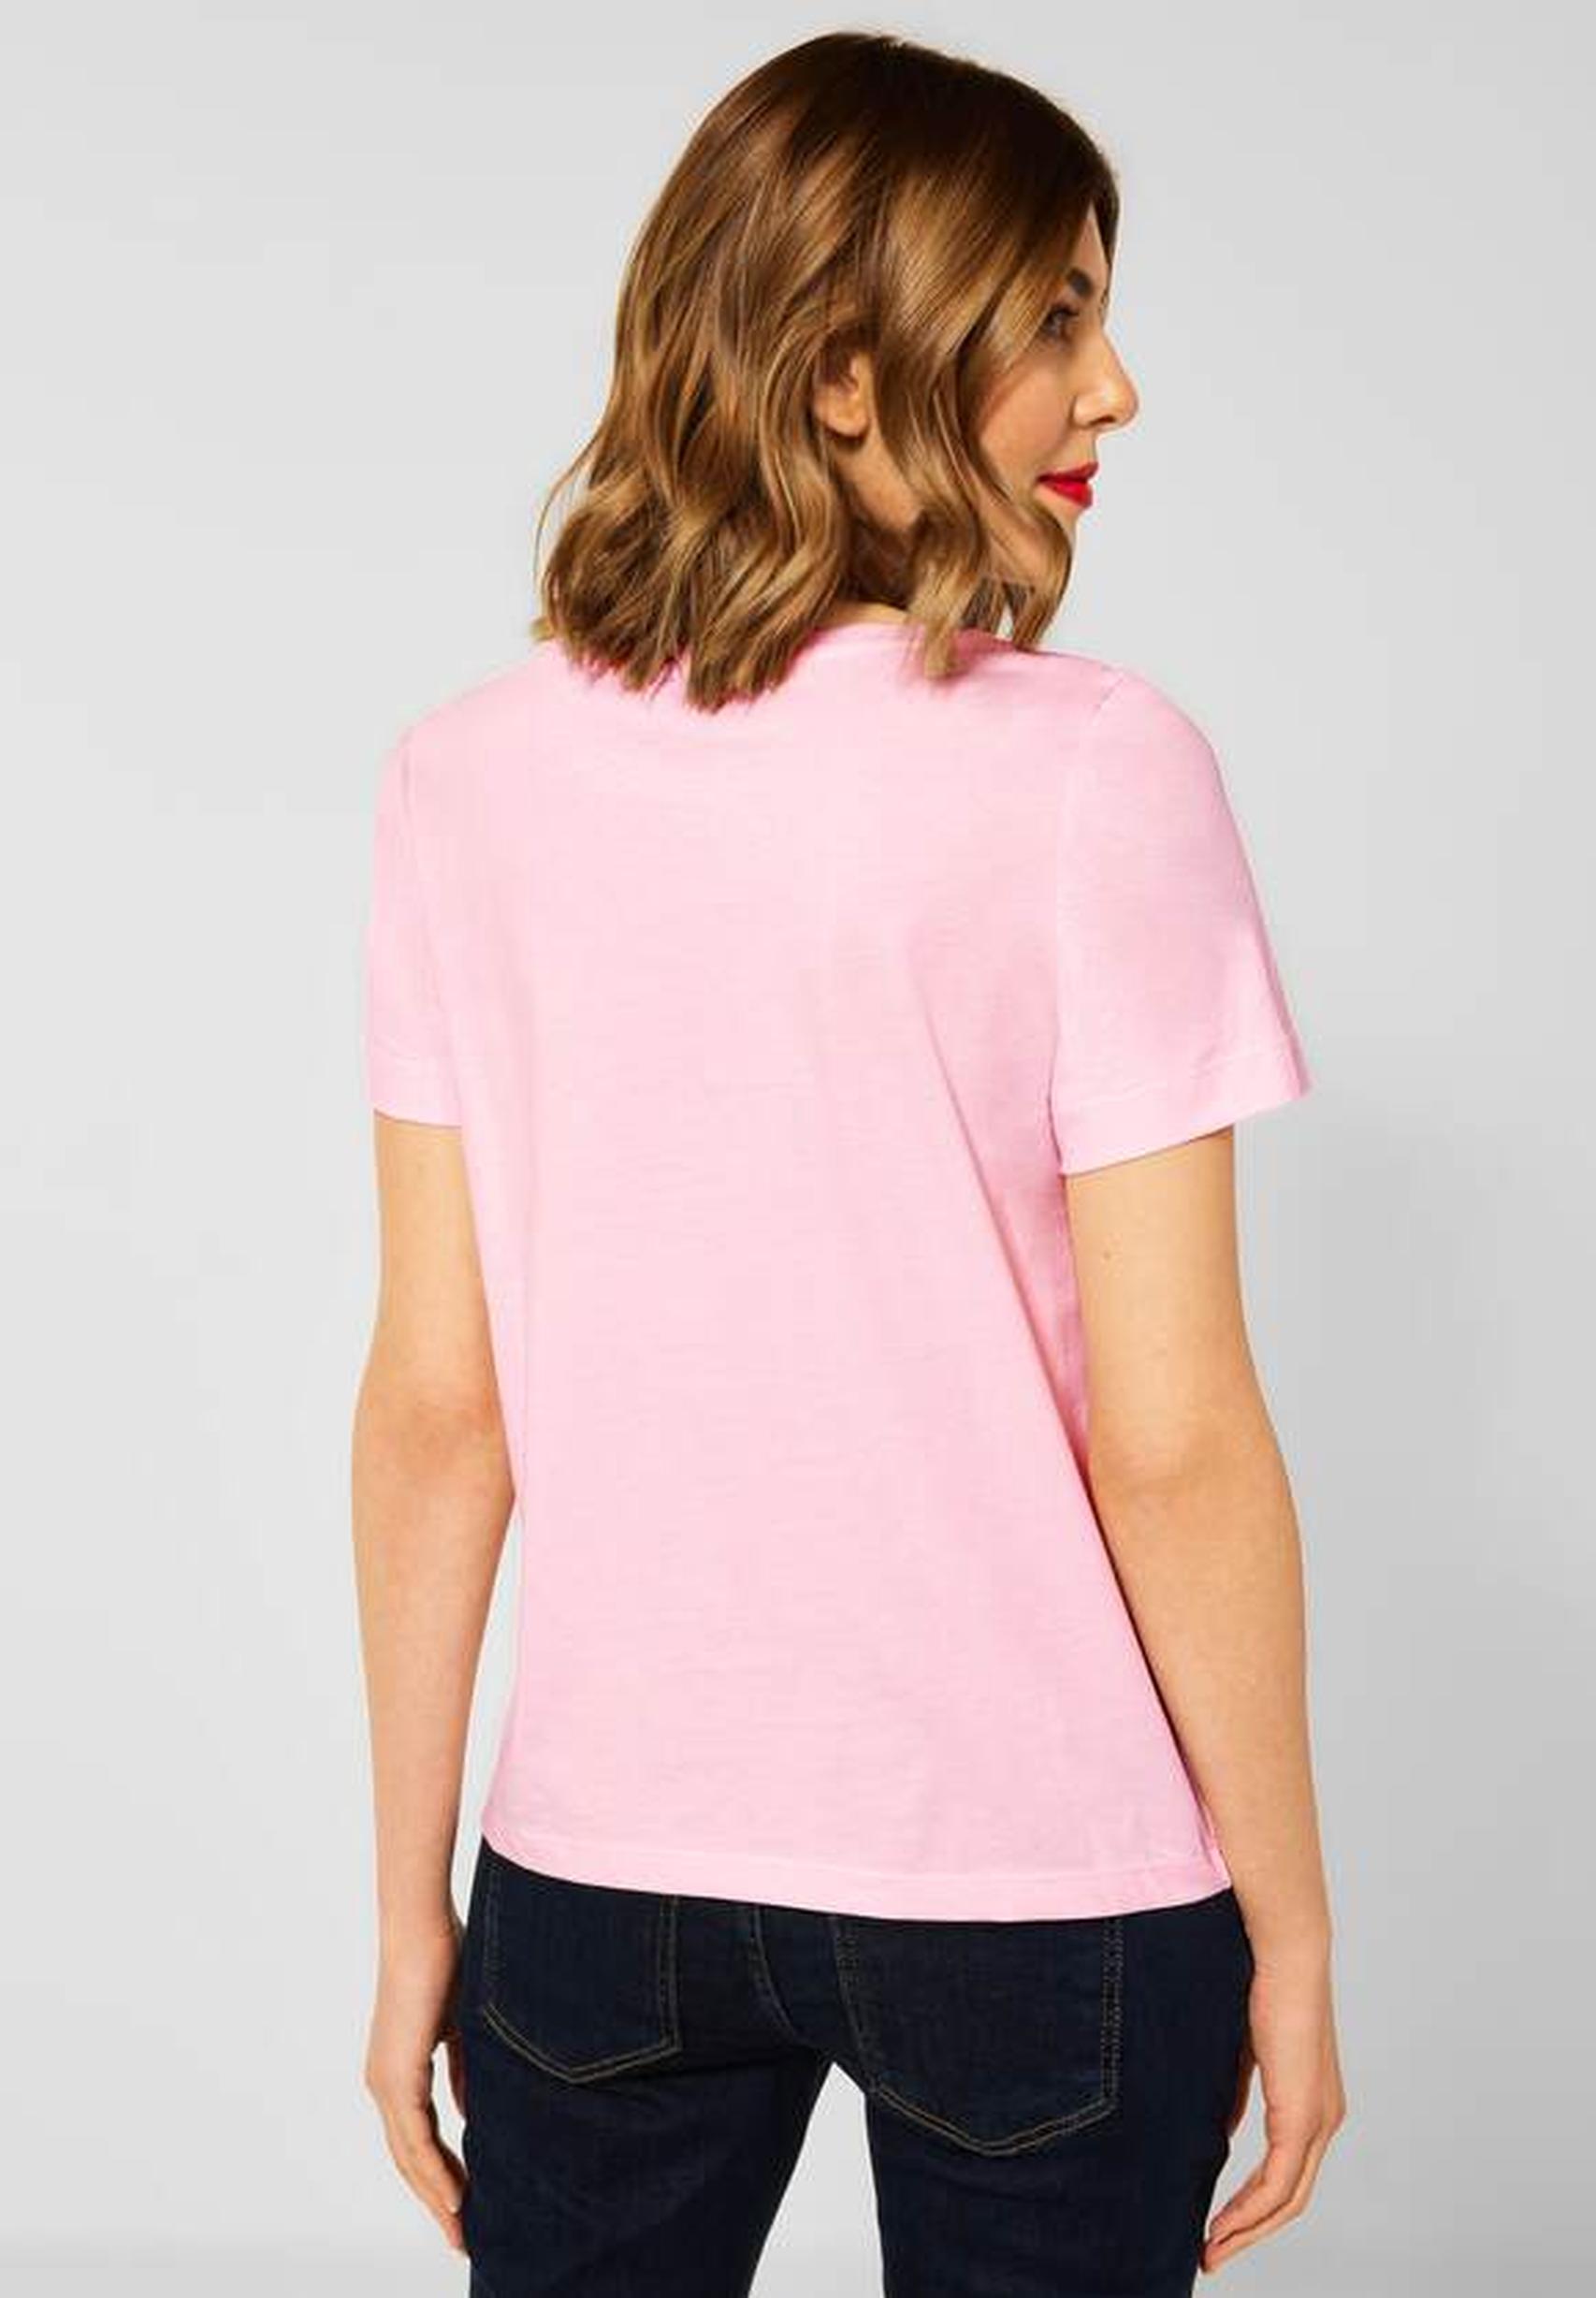 Trendiges T-Shirt aus der Kollektion von Street One in icy rose - 317605 | T-Shirts